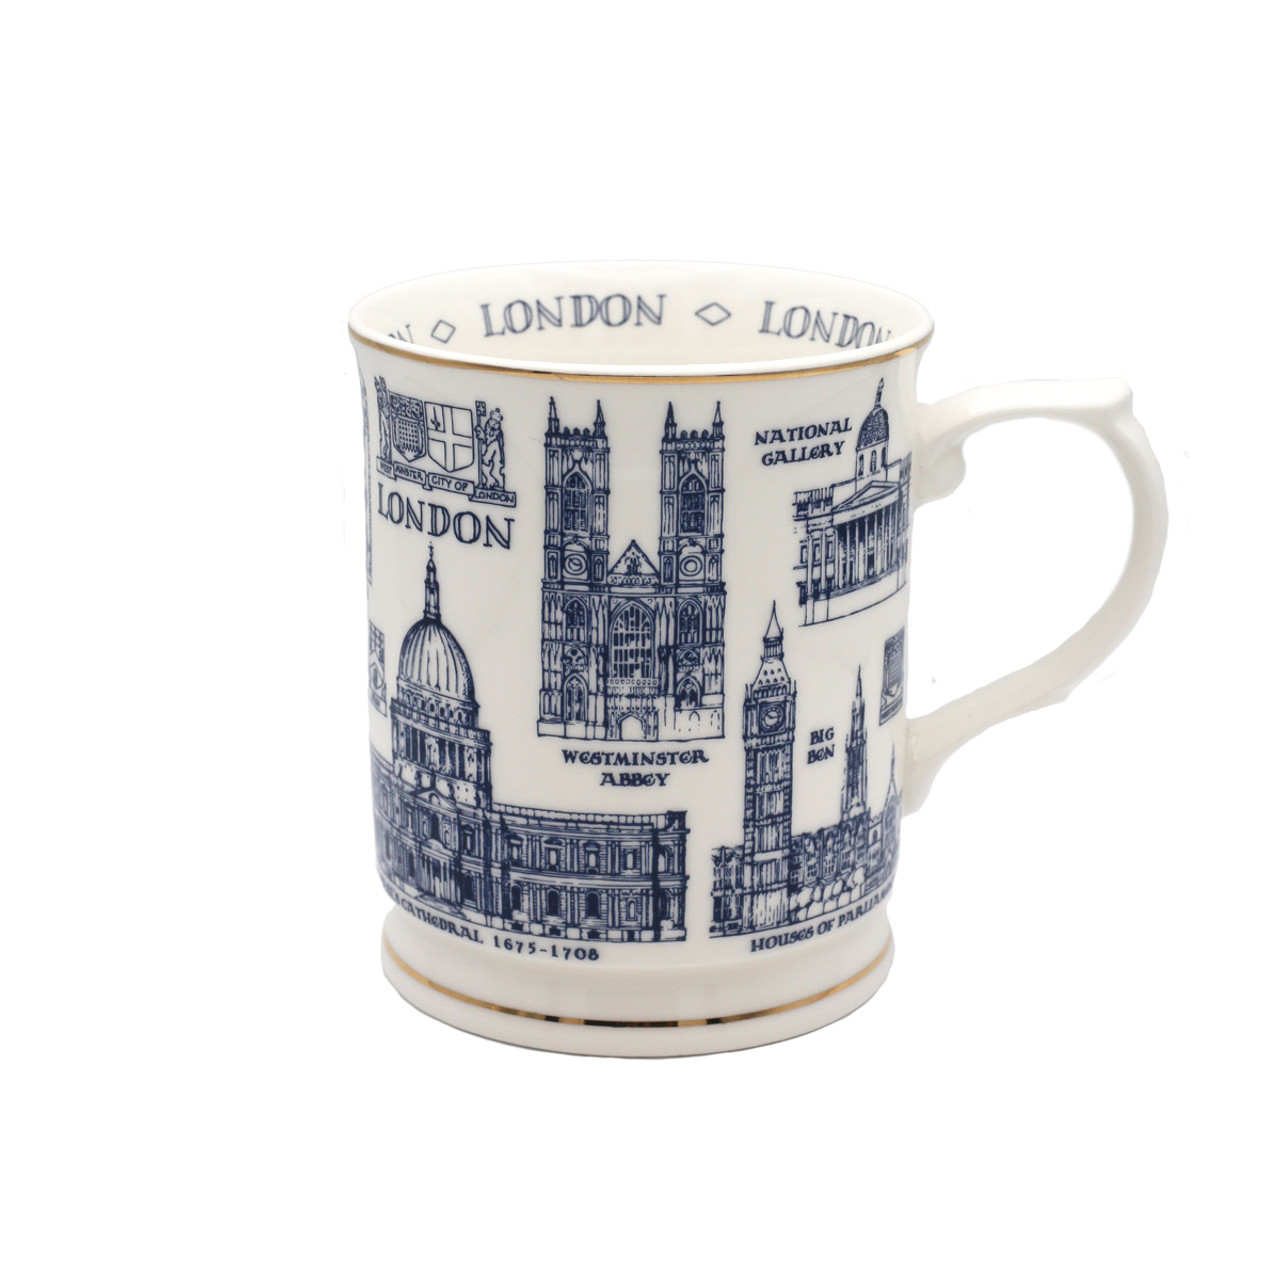 现货欧洲英国西敏寺威斯敏斯特马克杯杯子优质陶瓷伦敦遗产地图